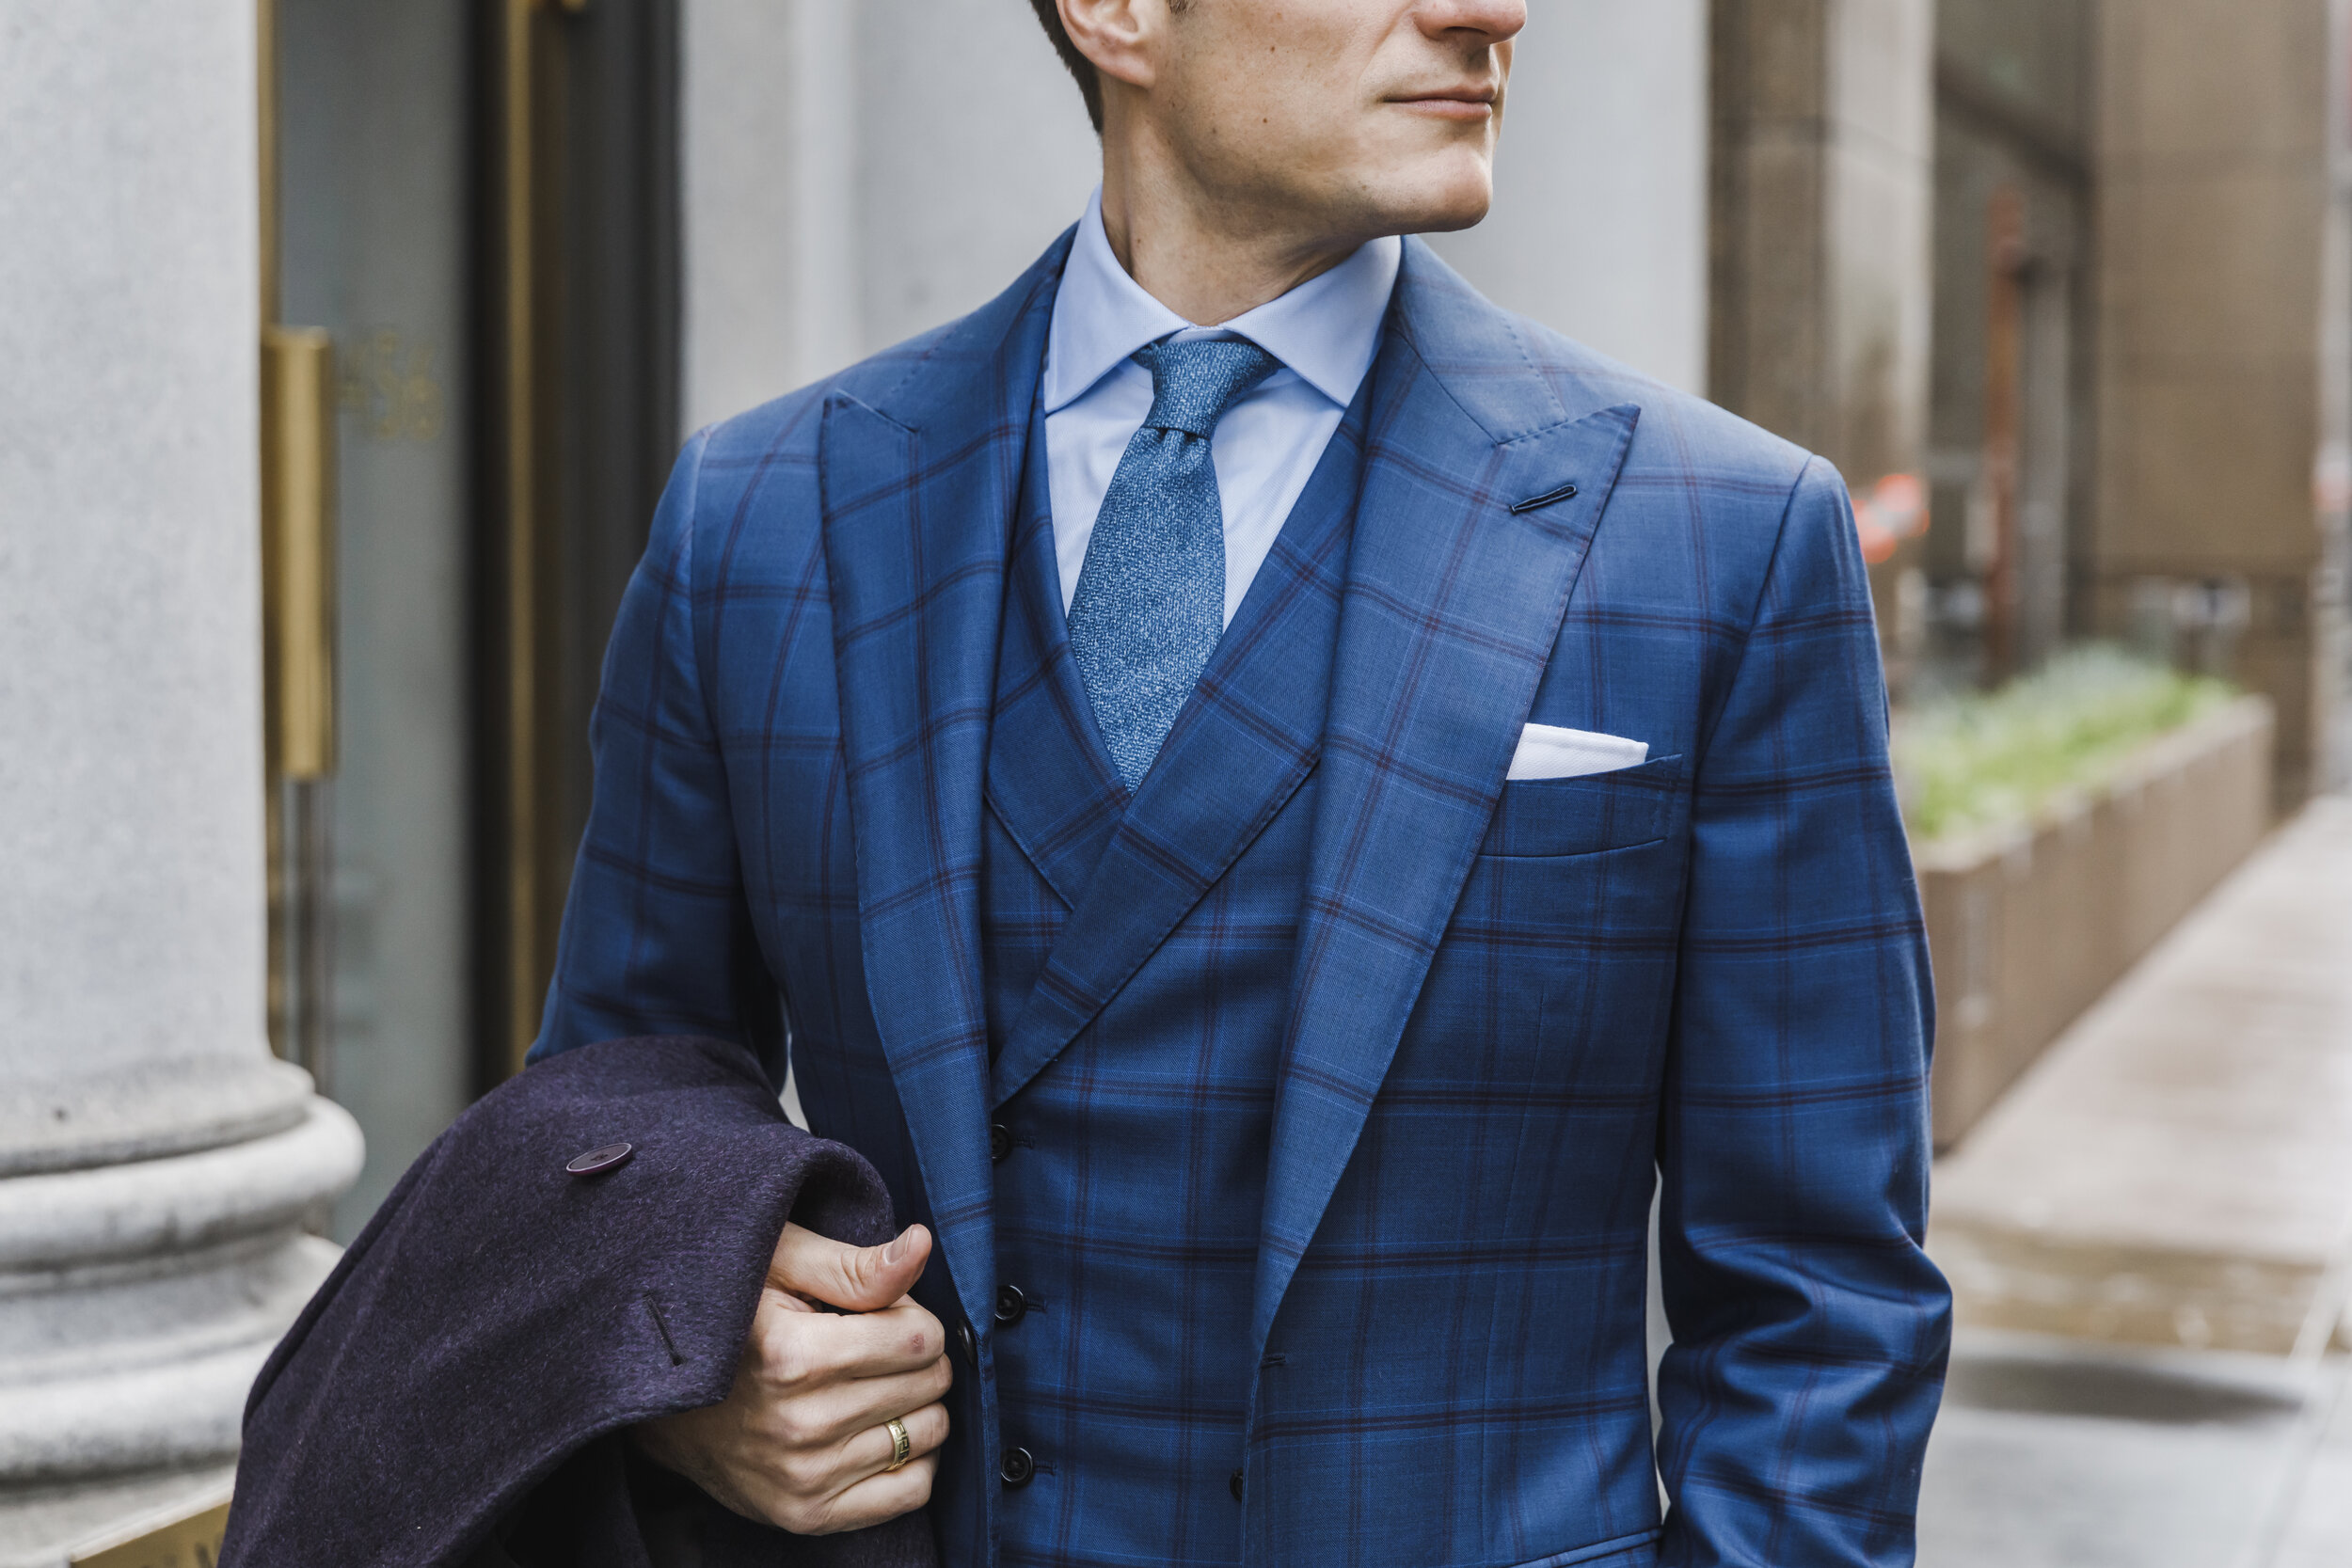 Linen Suit Navy Blue. Wedding Suit. High Quality